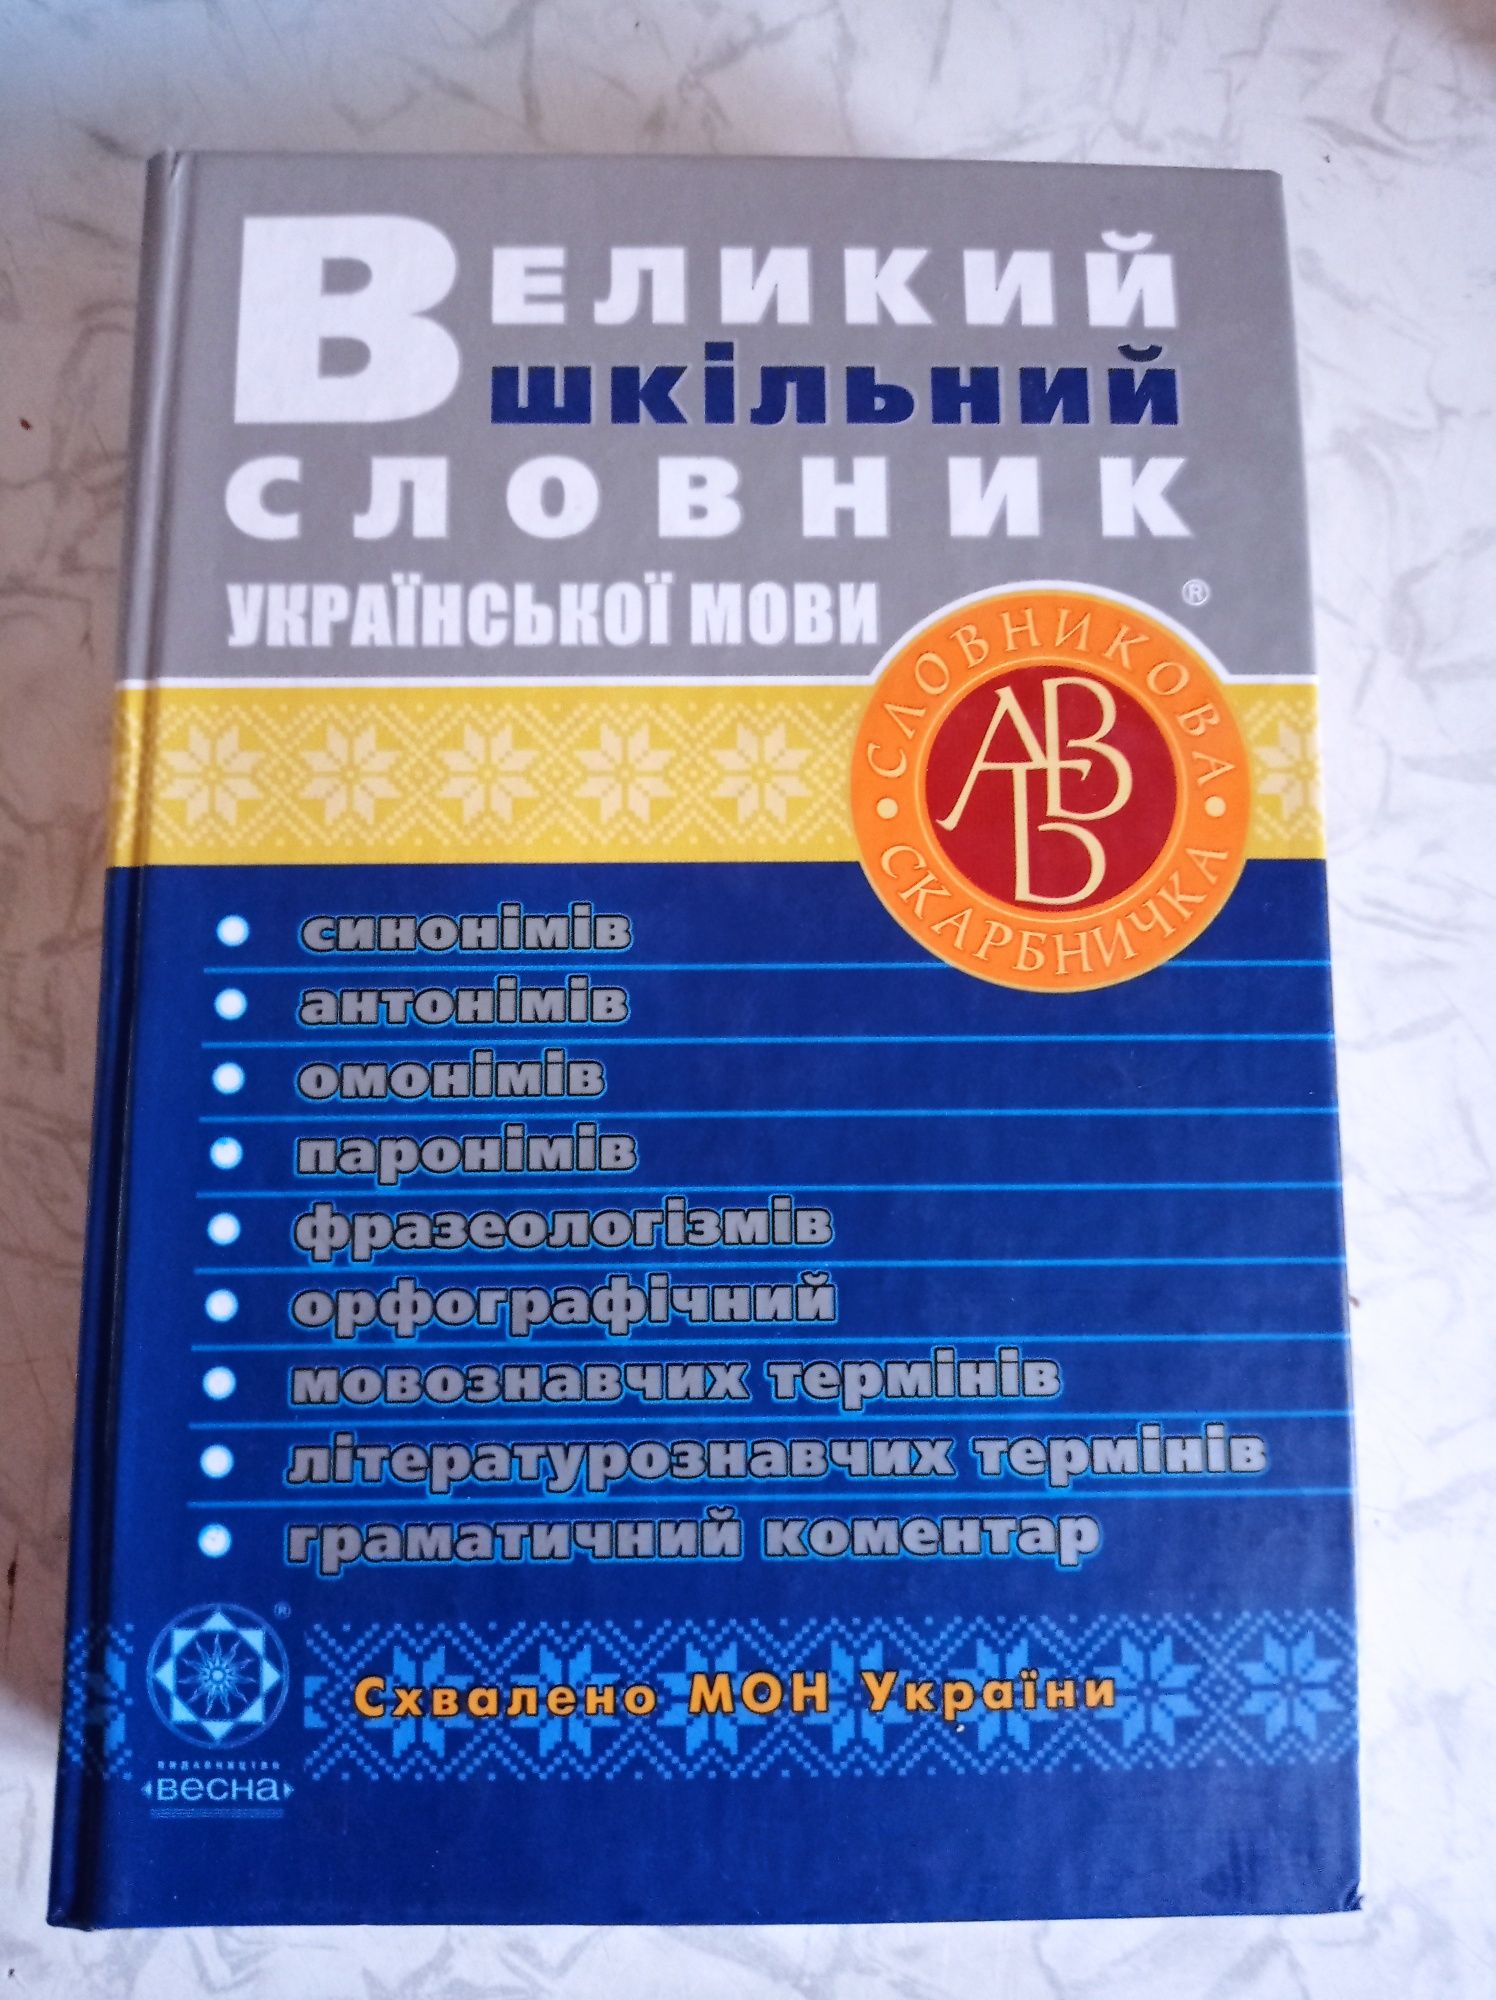 Великий шкільний словник, 50 грн.